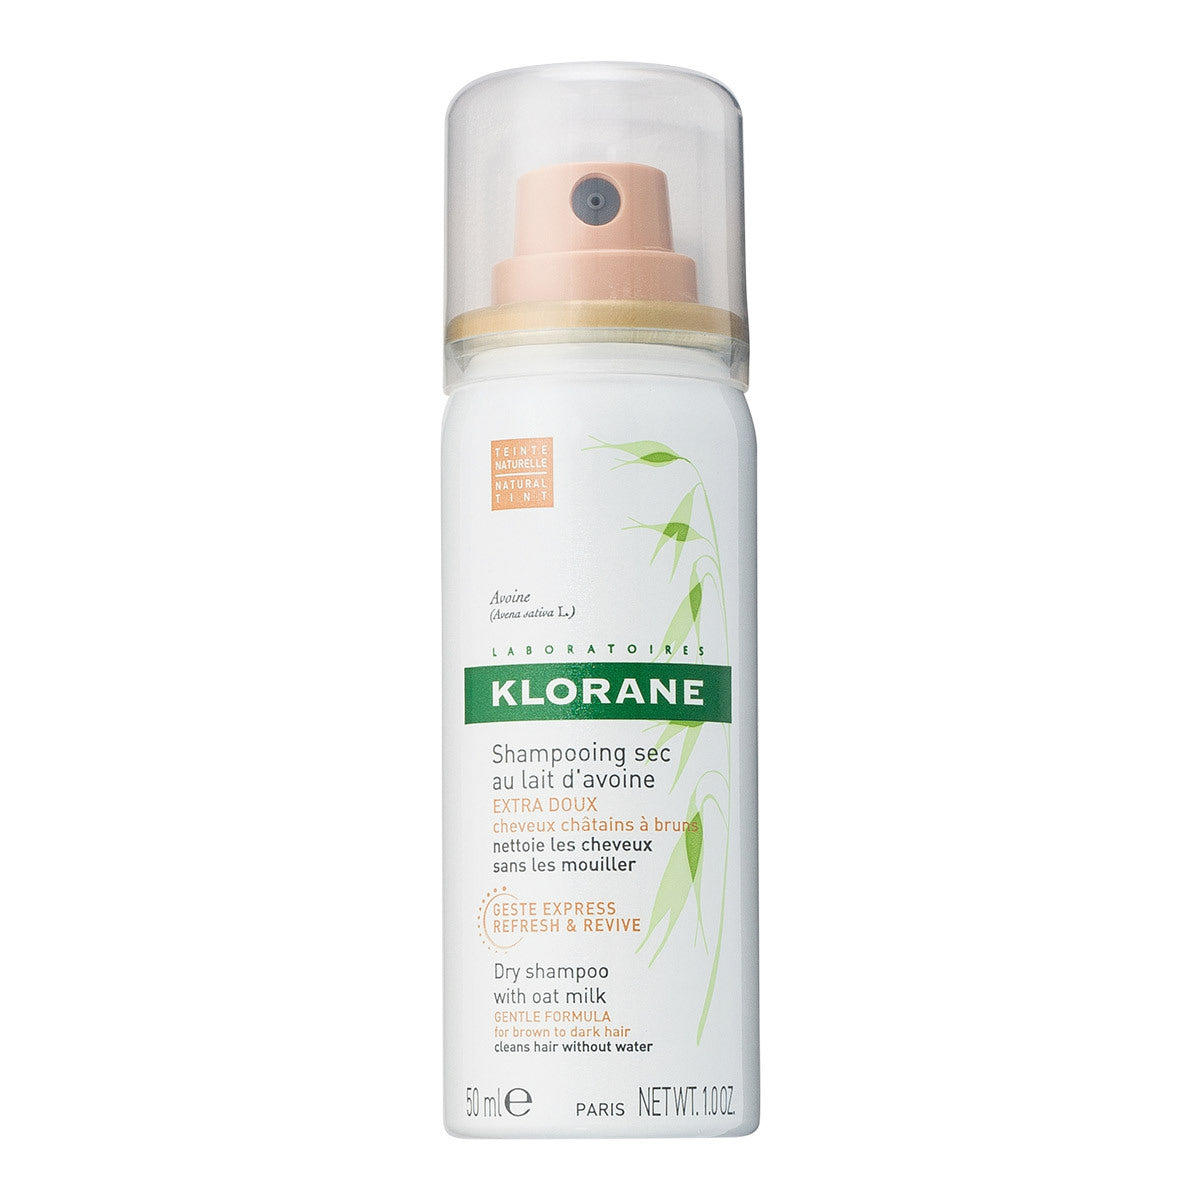 Klorane Dry Shampoo with Oat Milk Dark Hair Size) (Travel Size) (1.06 oz) –